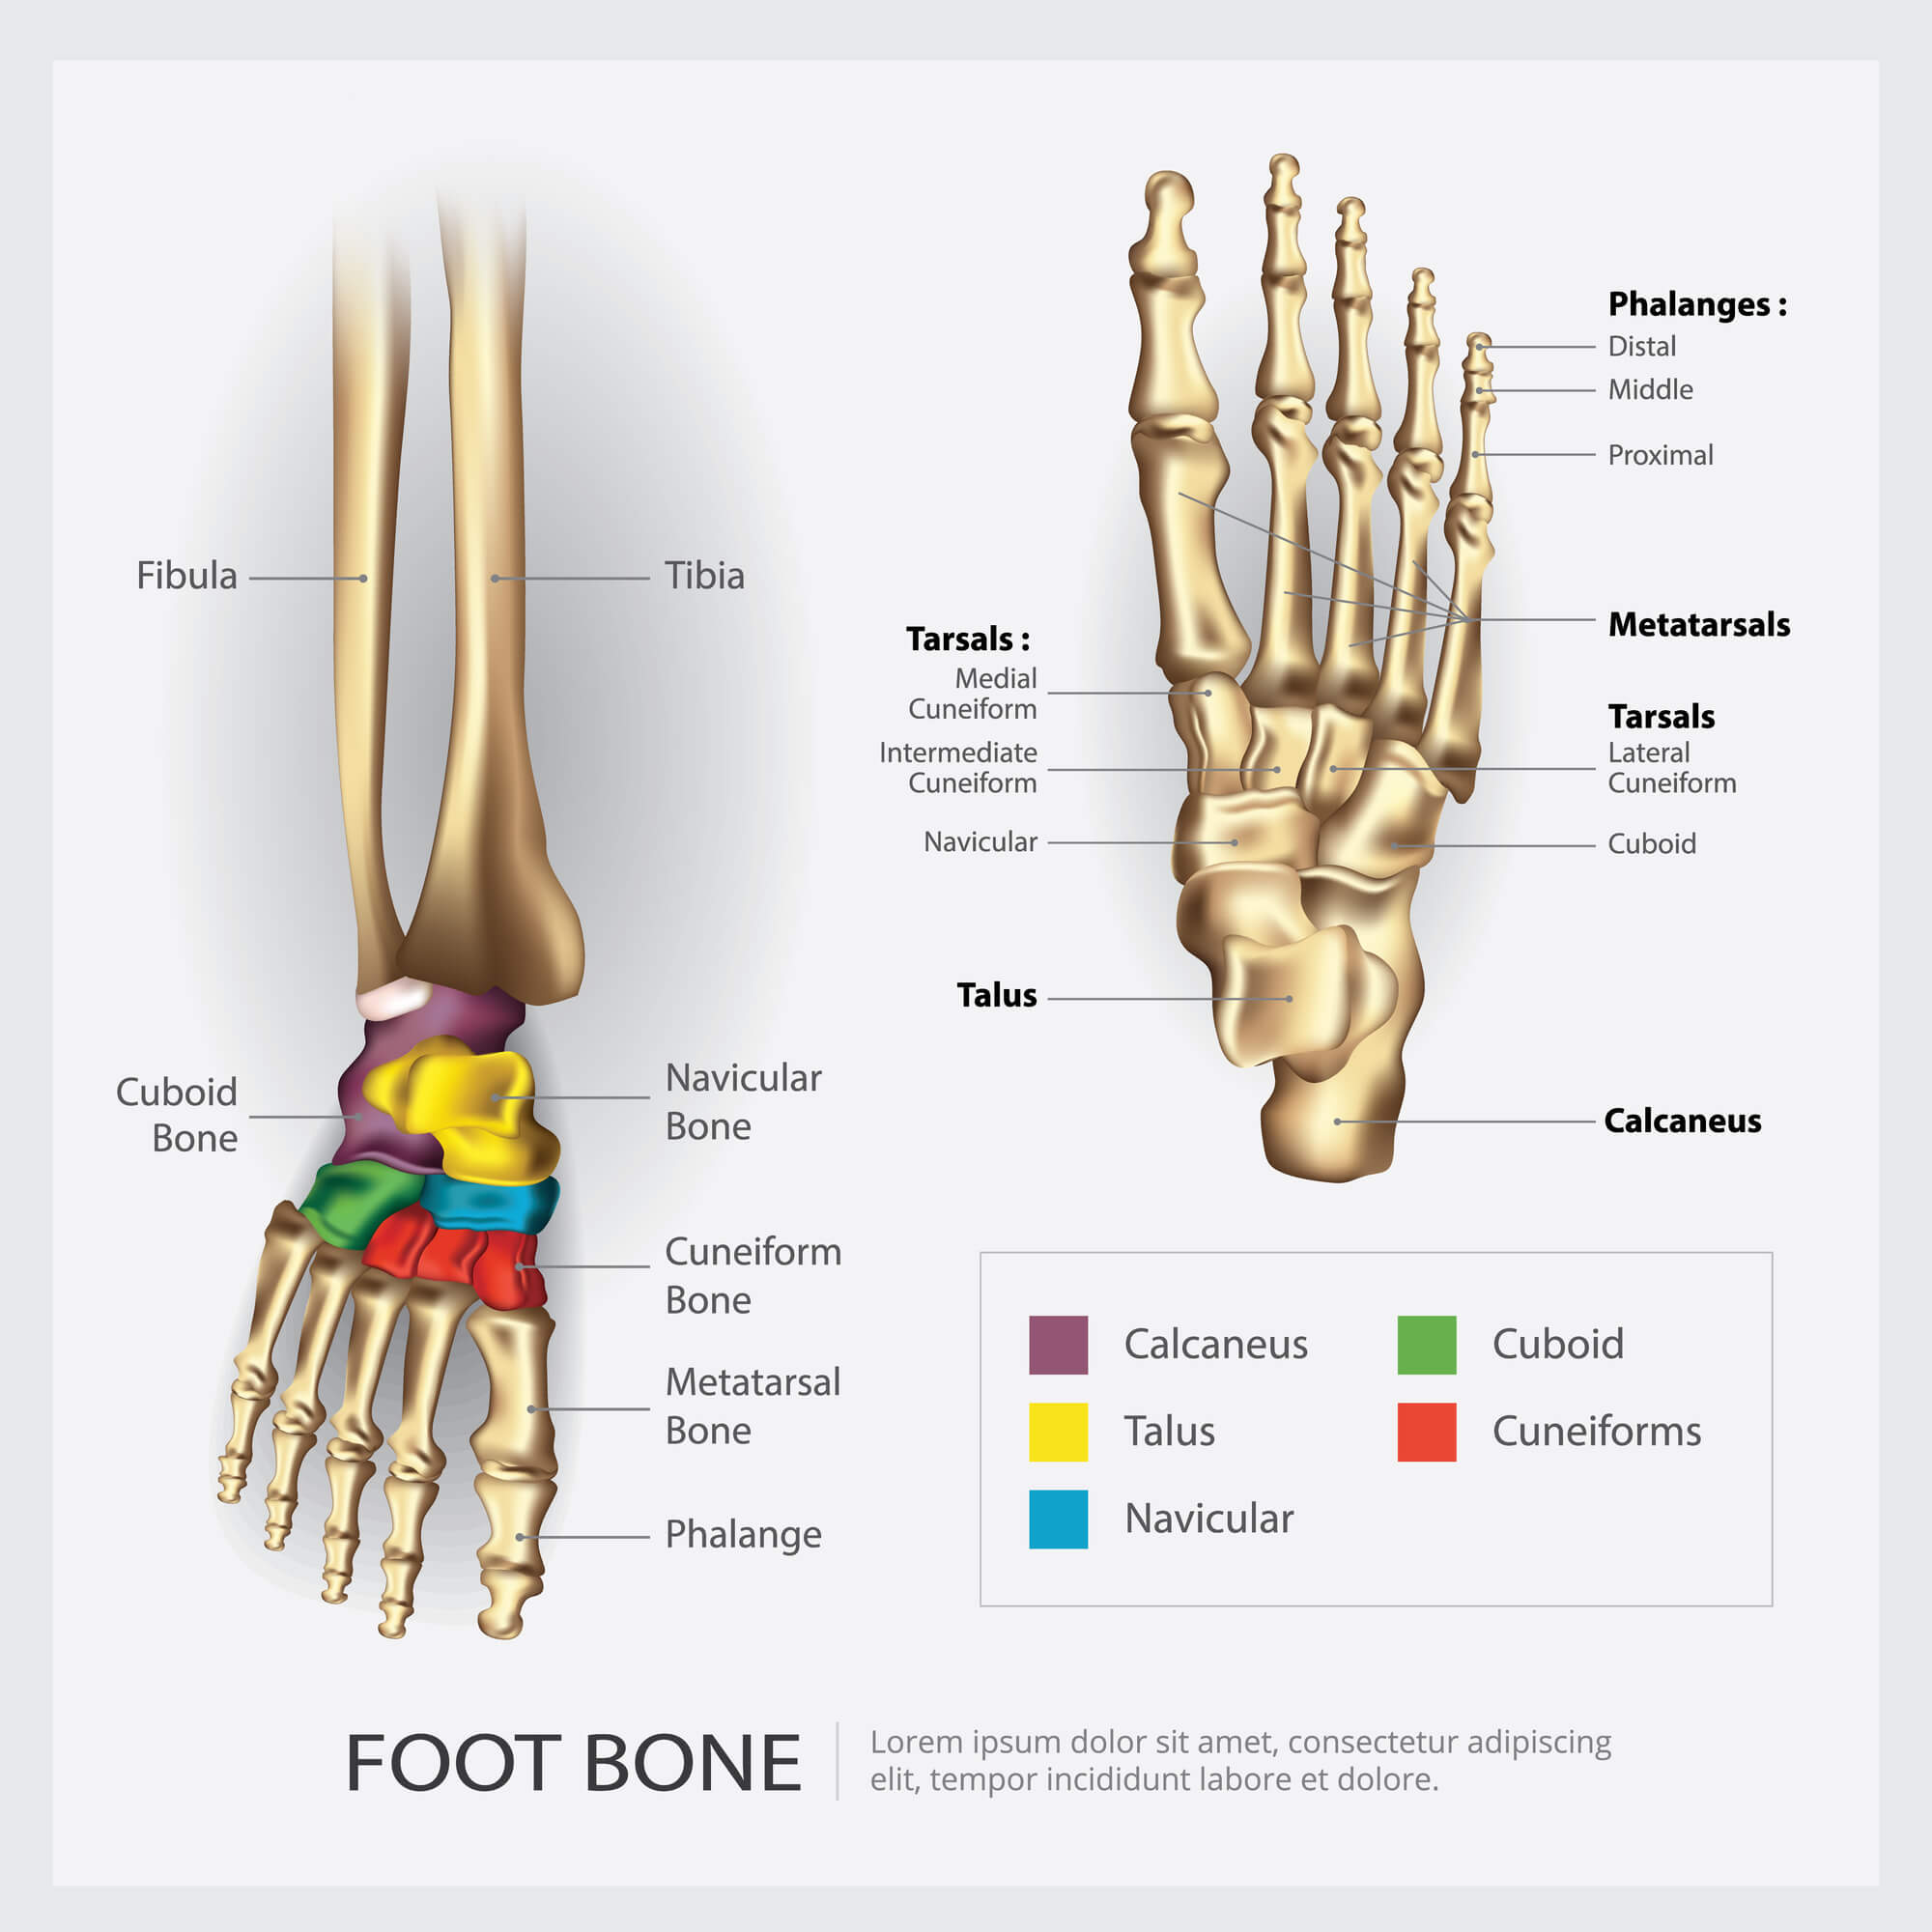 Foot bones